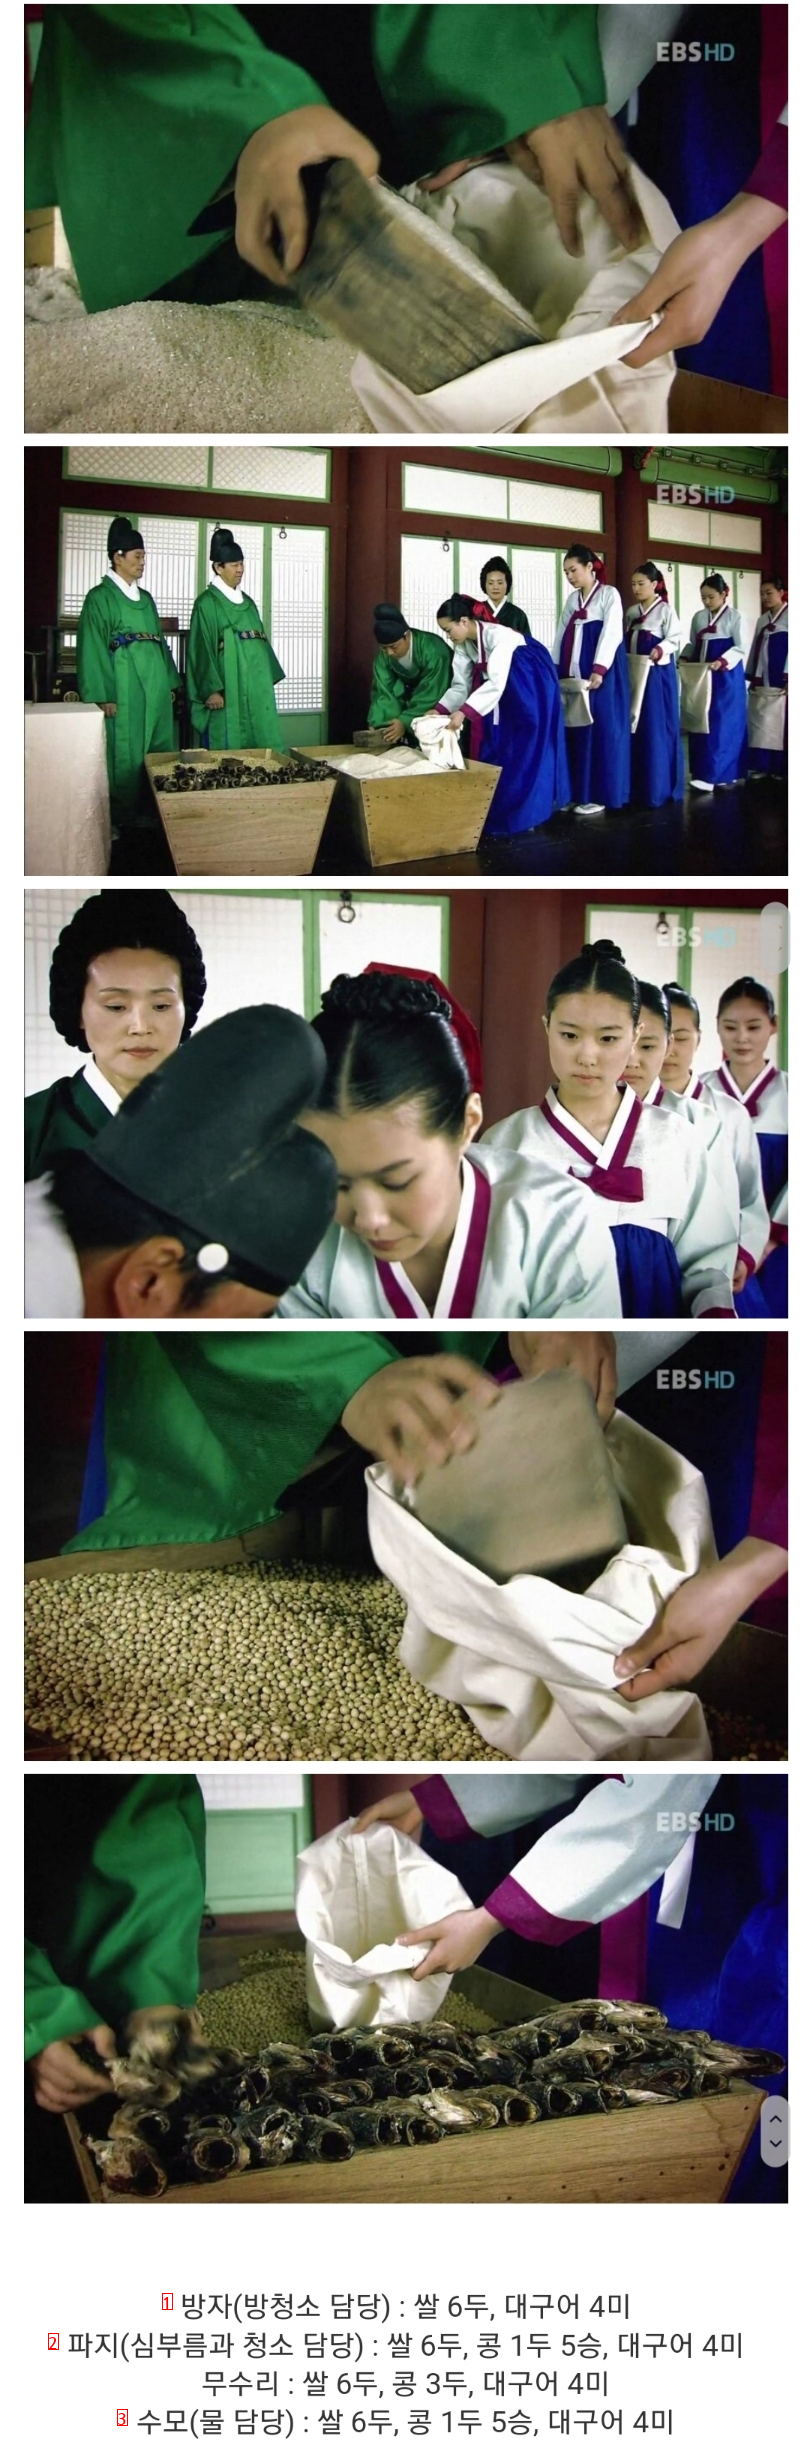 조선시대 궁녀들 월급 받는 모습.jpg